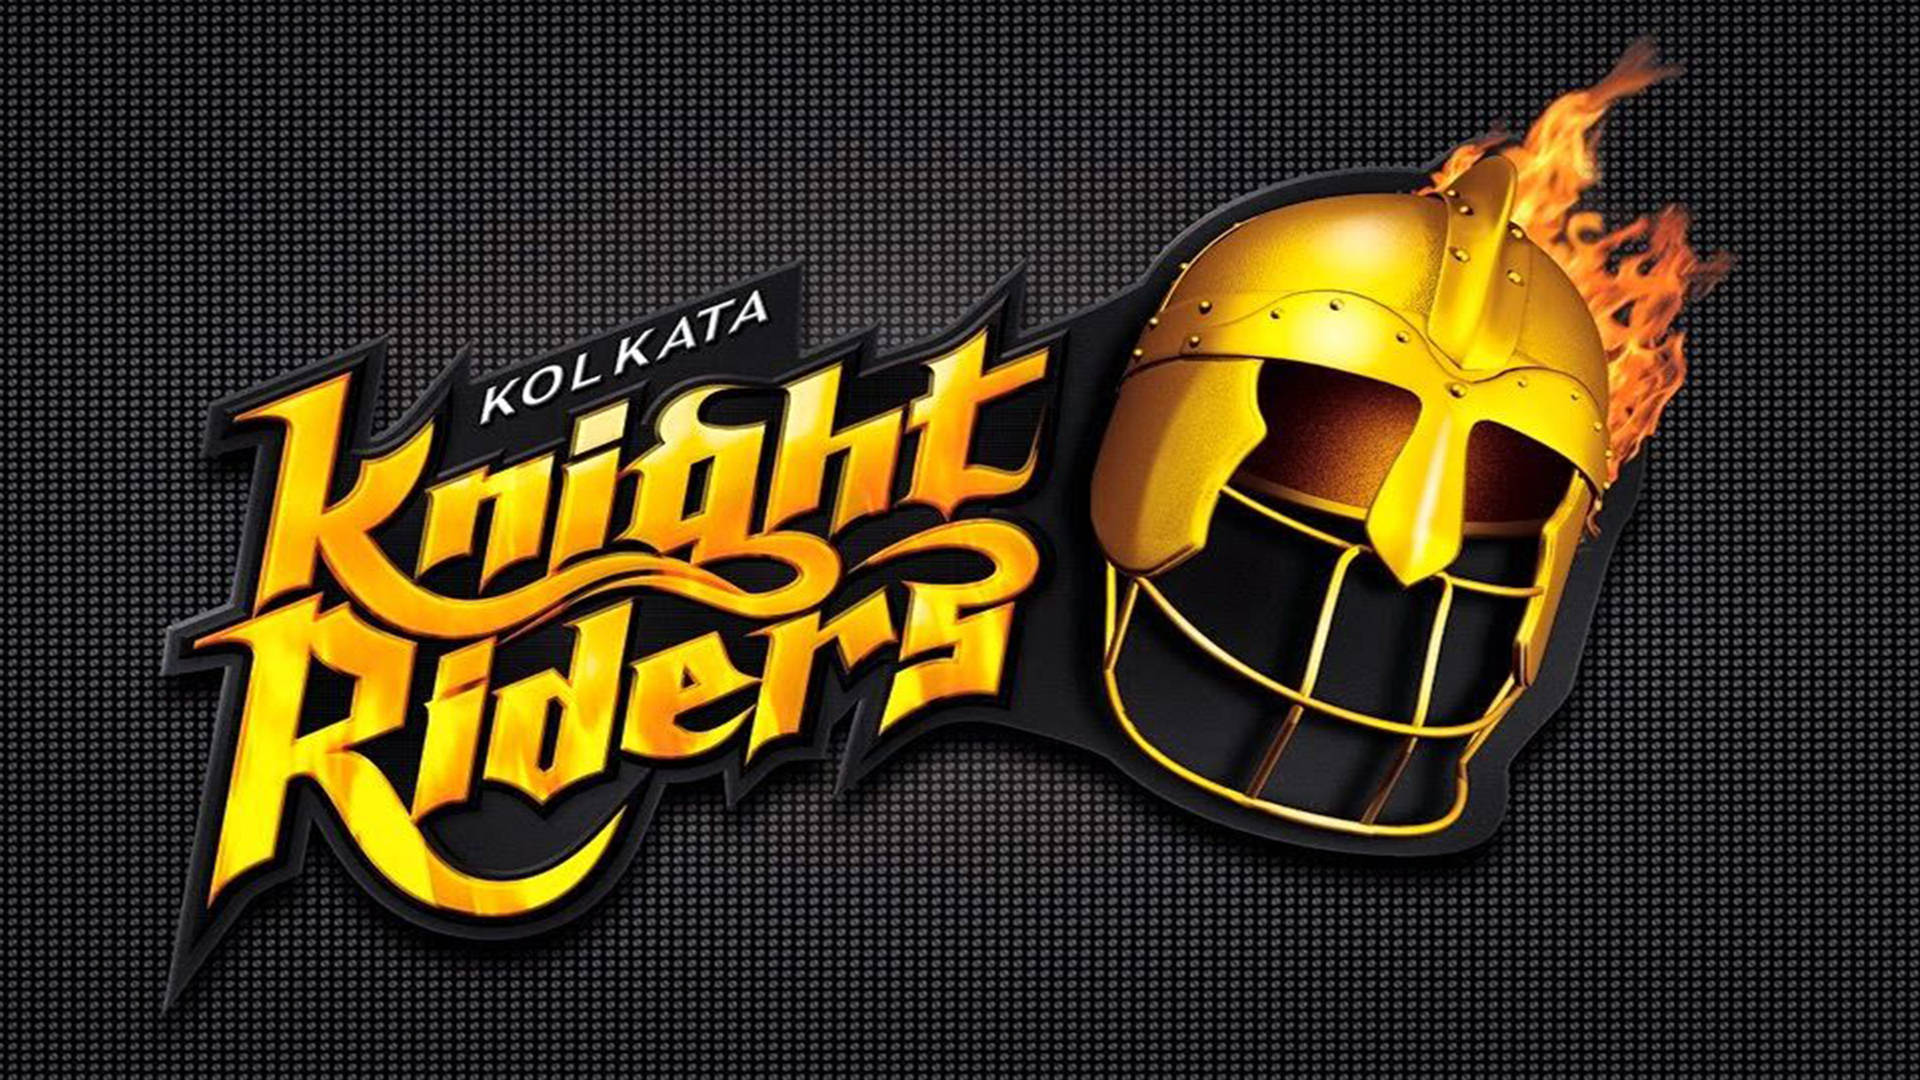 Kolkata Knight Riders Wordmark Wallpaper